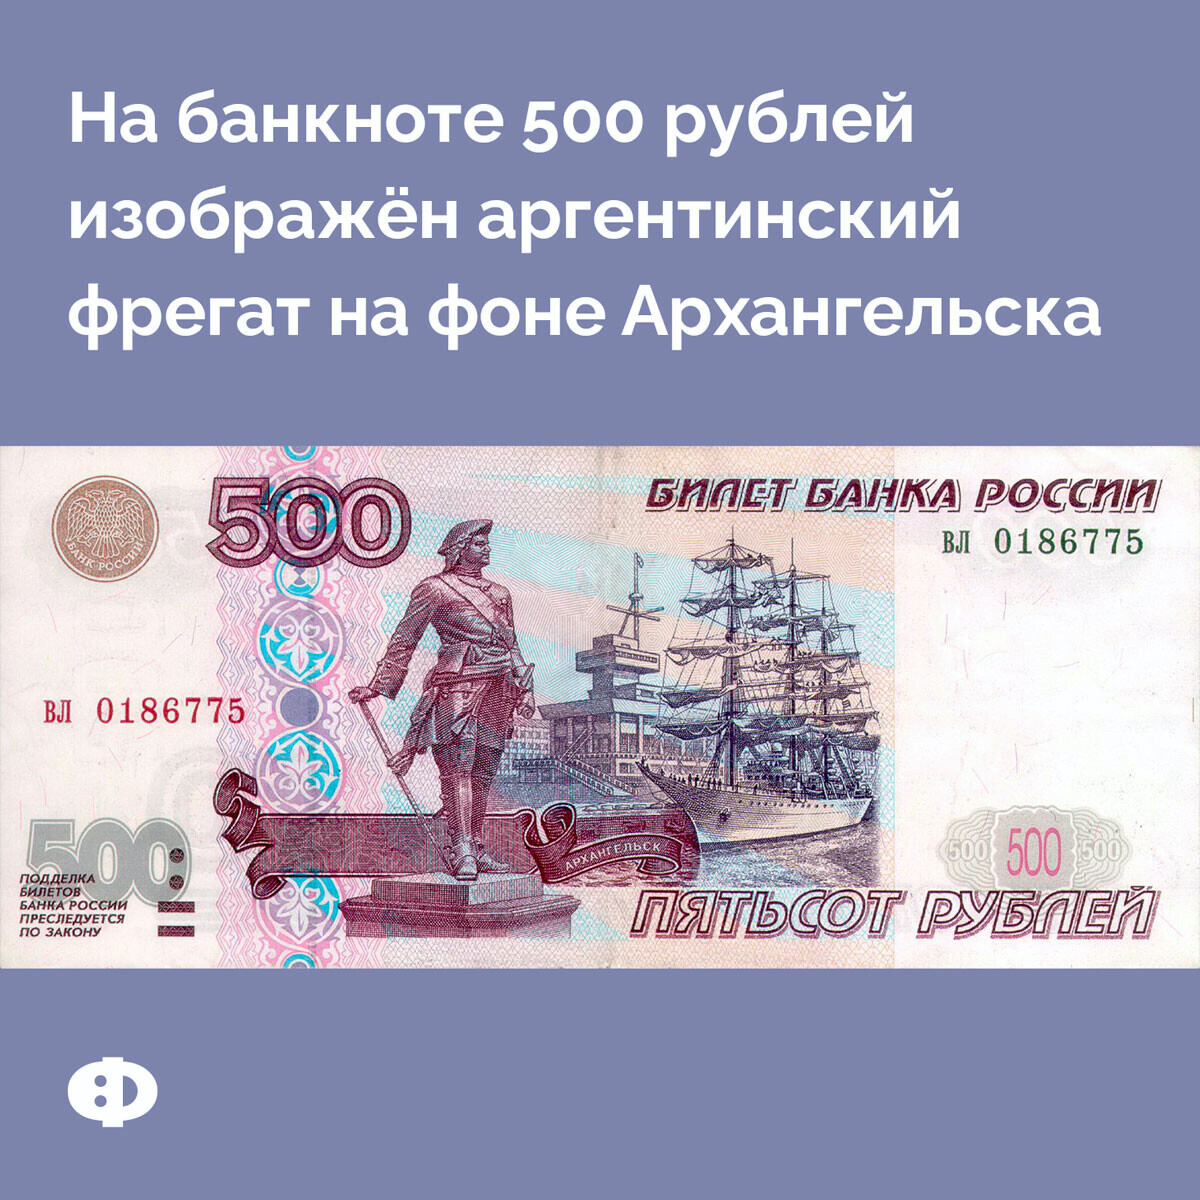 Что изображено на рублях россии. Купюра 500 рублей. 500 Рублей. 500 Рублей что изображено. Что изображено на купюре 500 рублей.